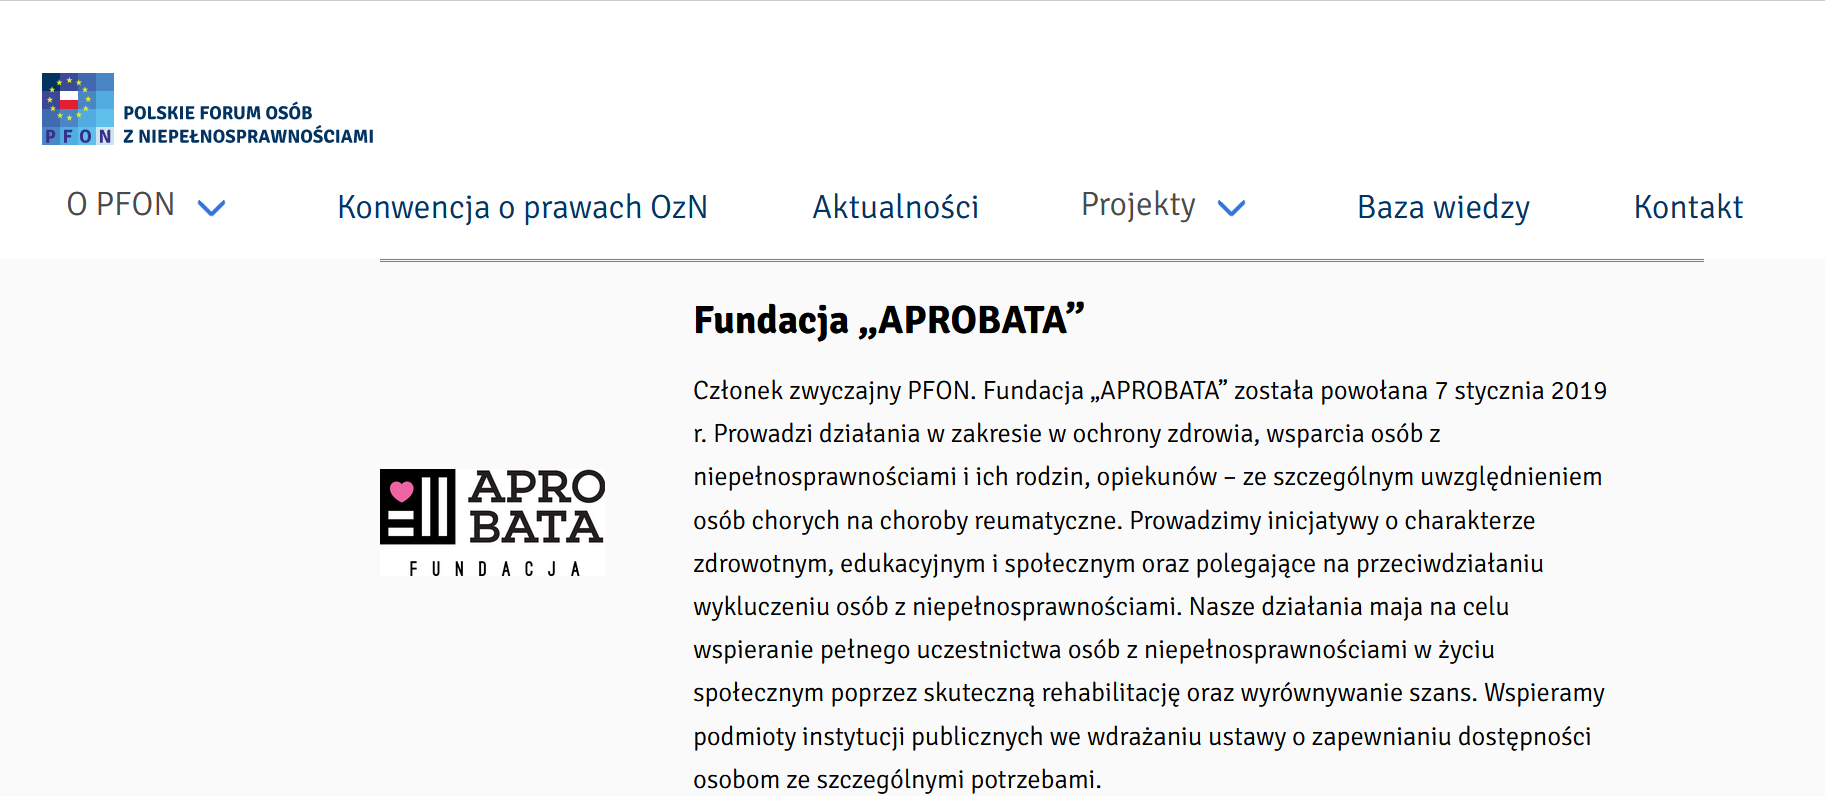 Wpis na stronie PFON informacja o działaniach fundacji ,,APROBATA'